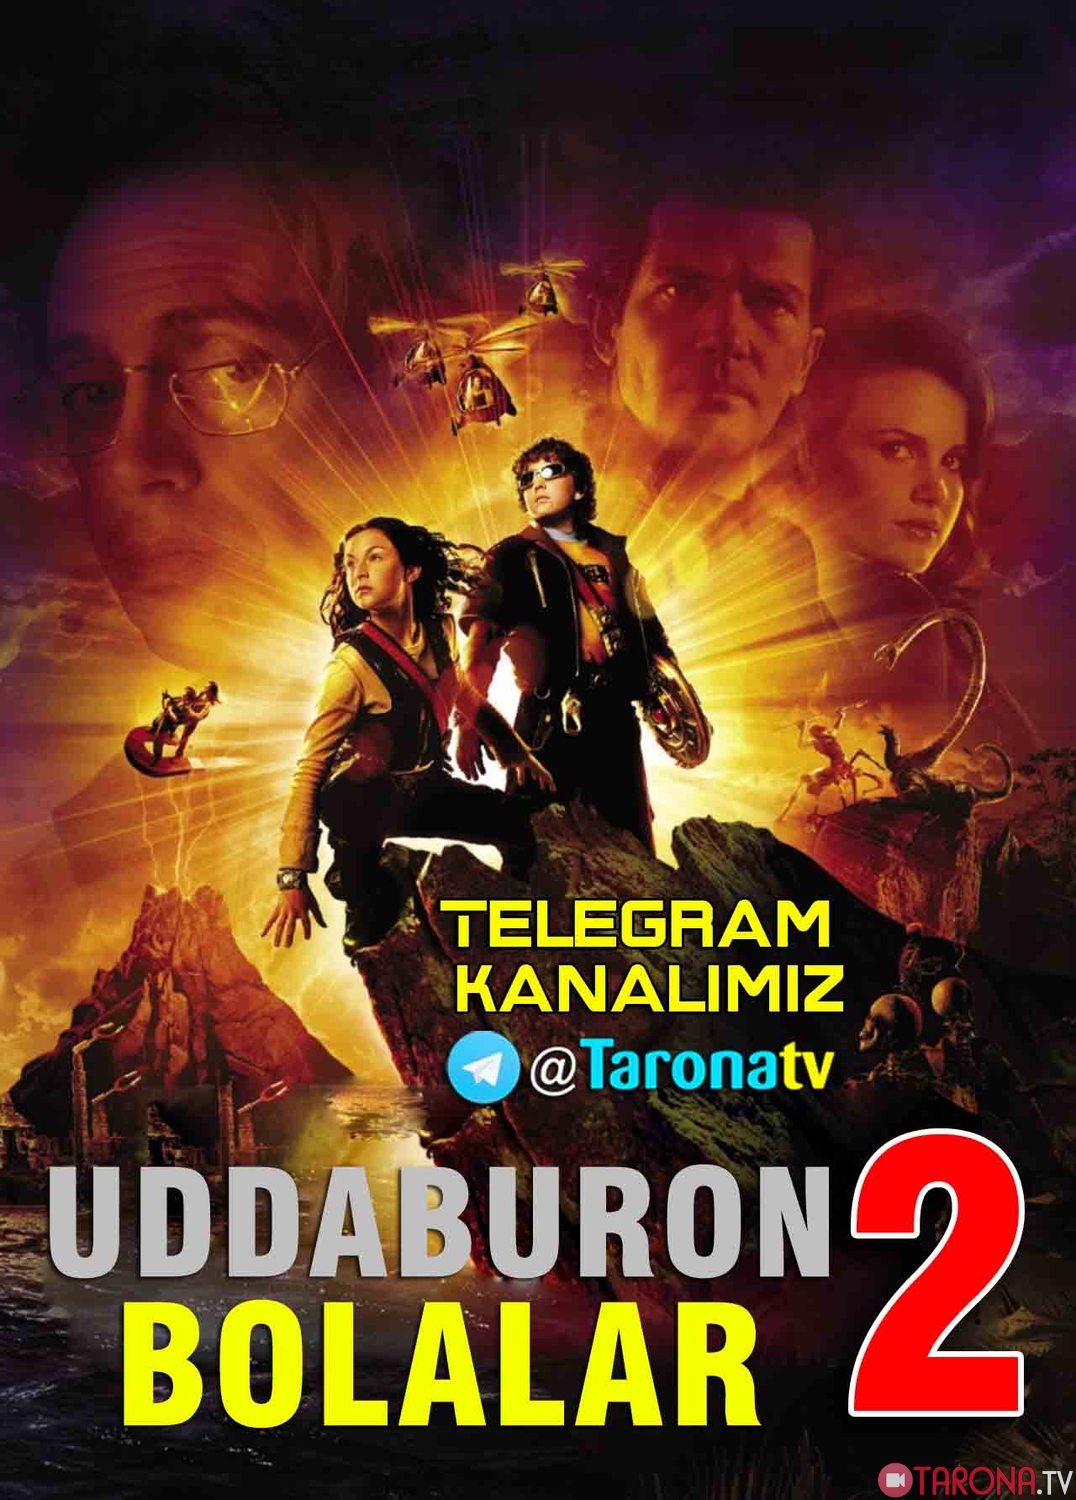 Uddaburon bolalar 2 (Bolajon uchun, Uzbek tilida) HD 2002